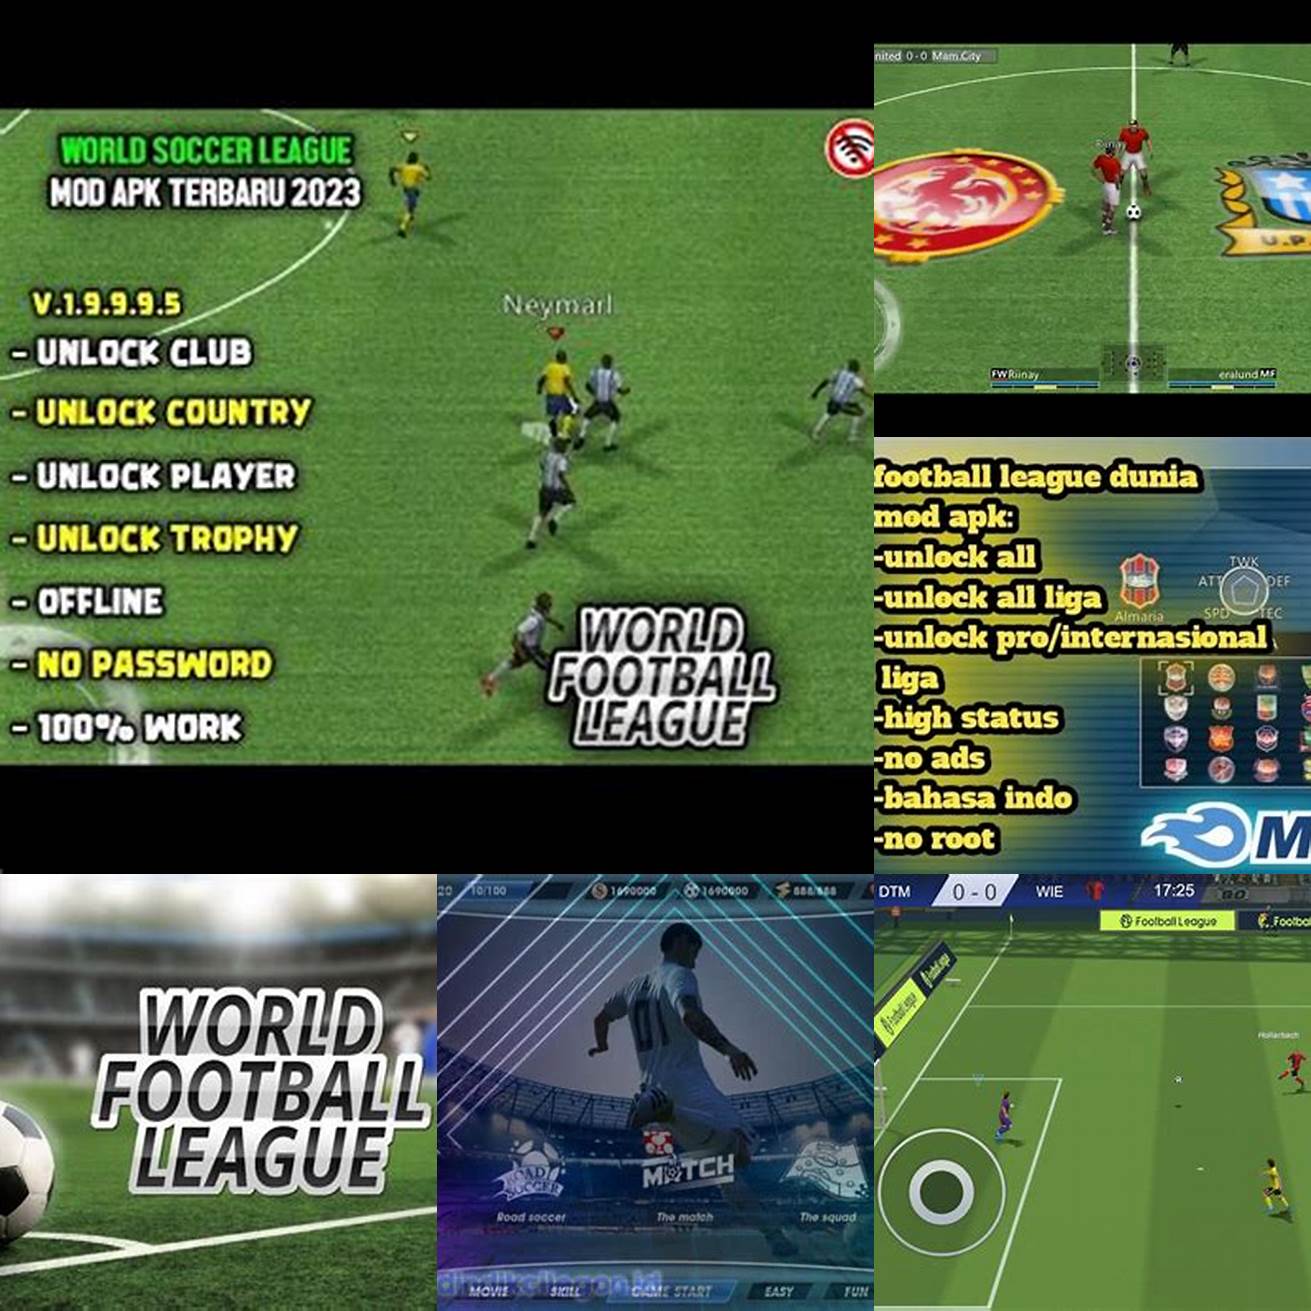 5 Beragam fitur World Football League Mod Apk menawarkan banyak fitur menarik seperti mode latihan mode taktik dan banyak lagi